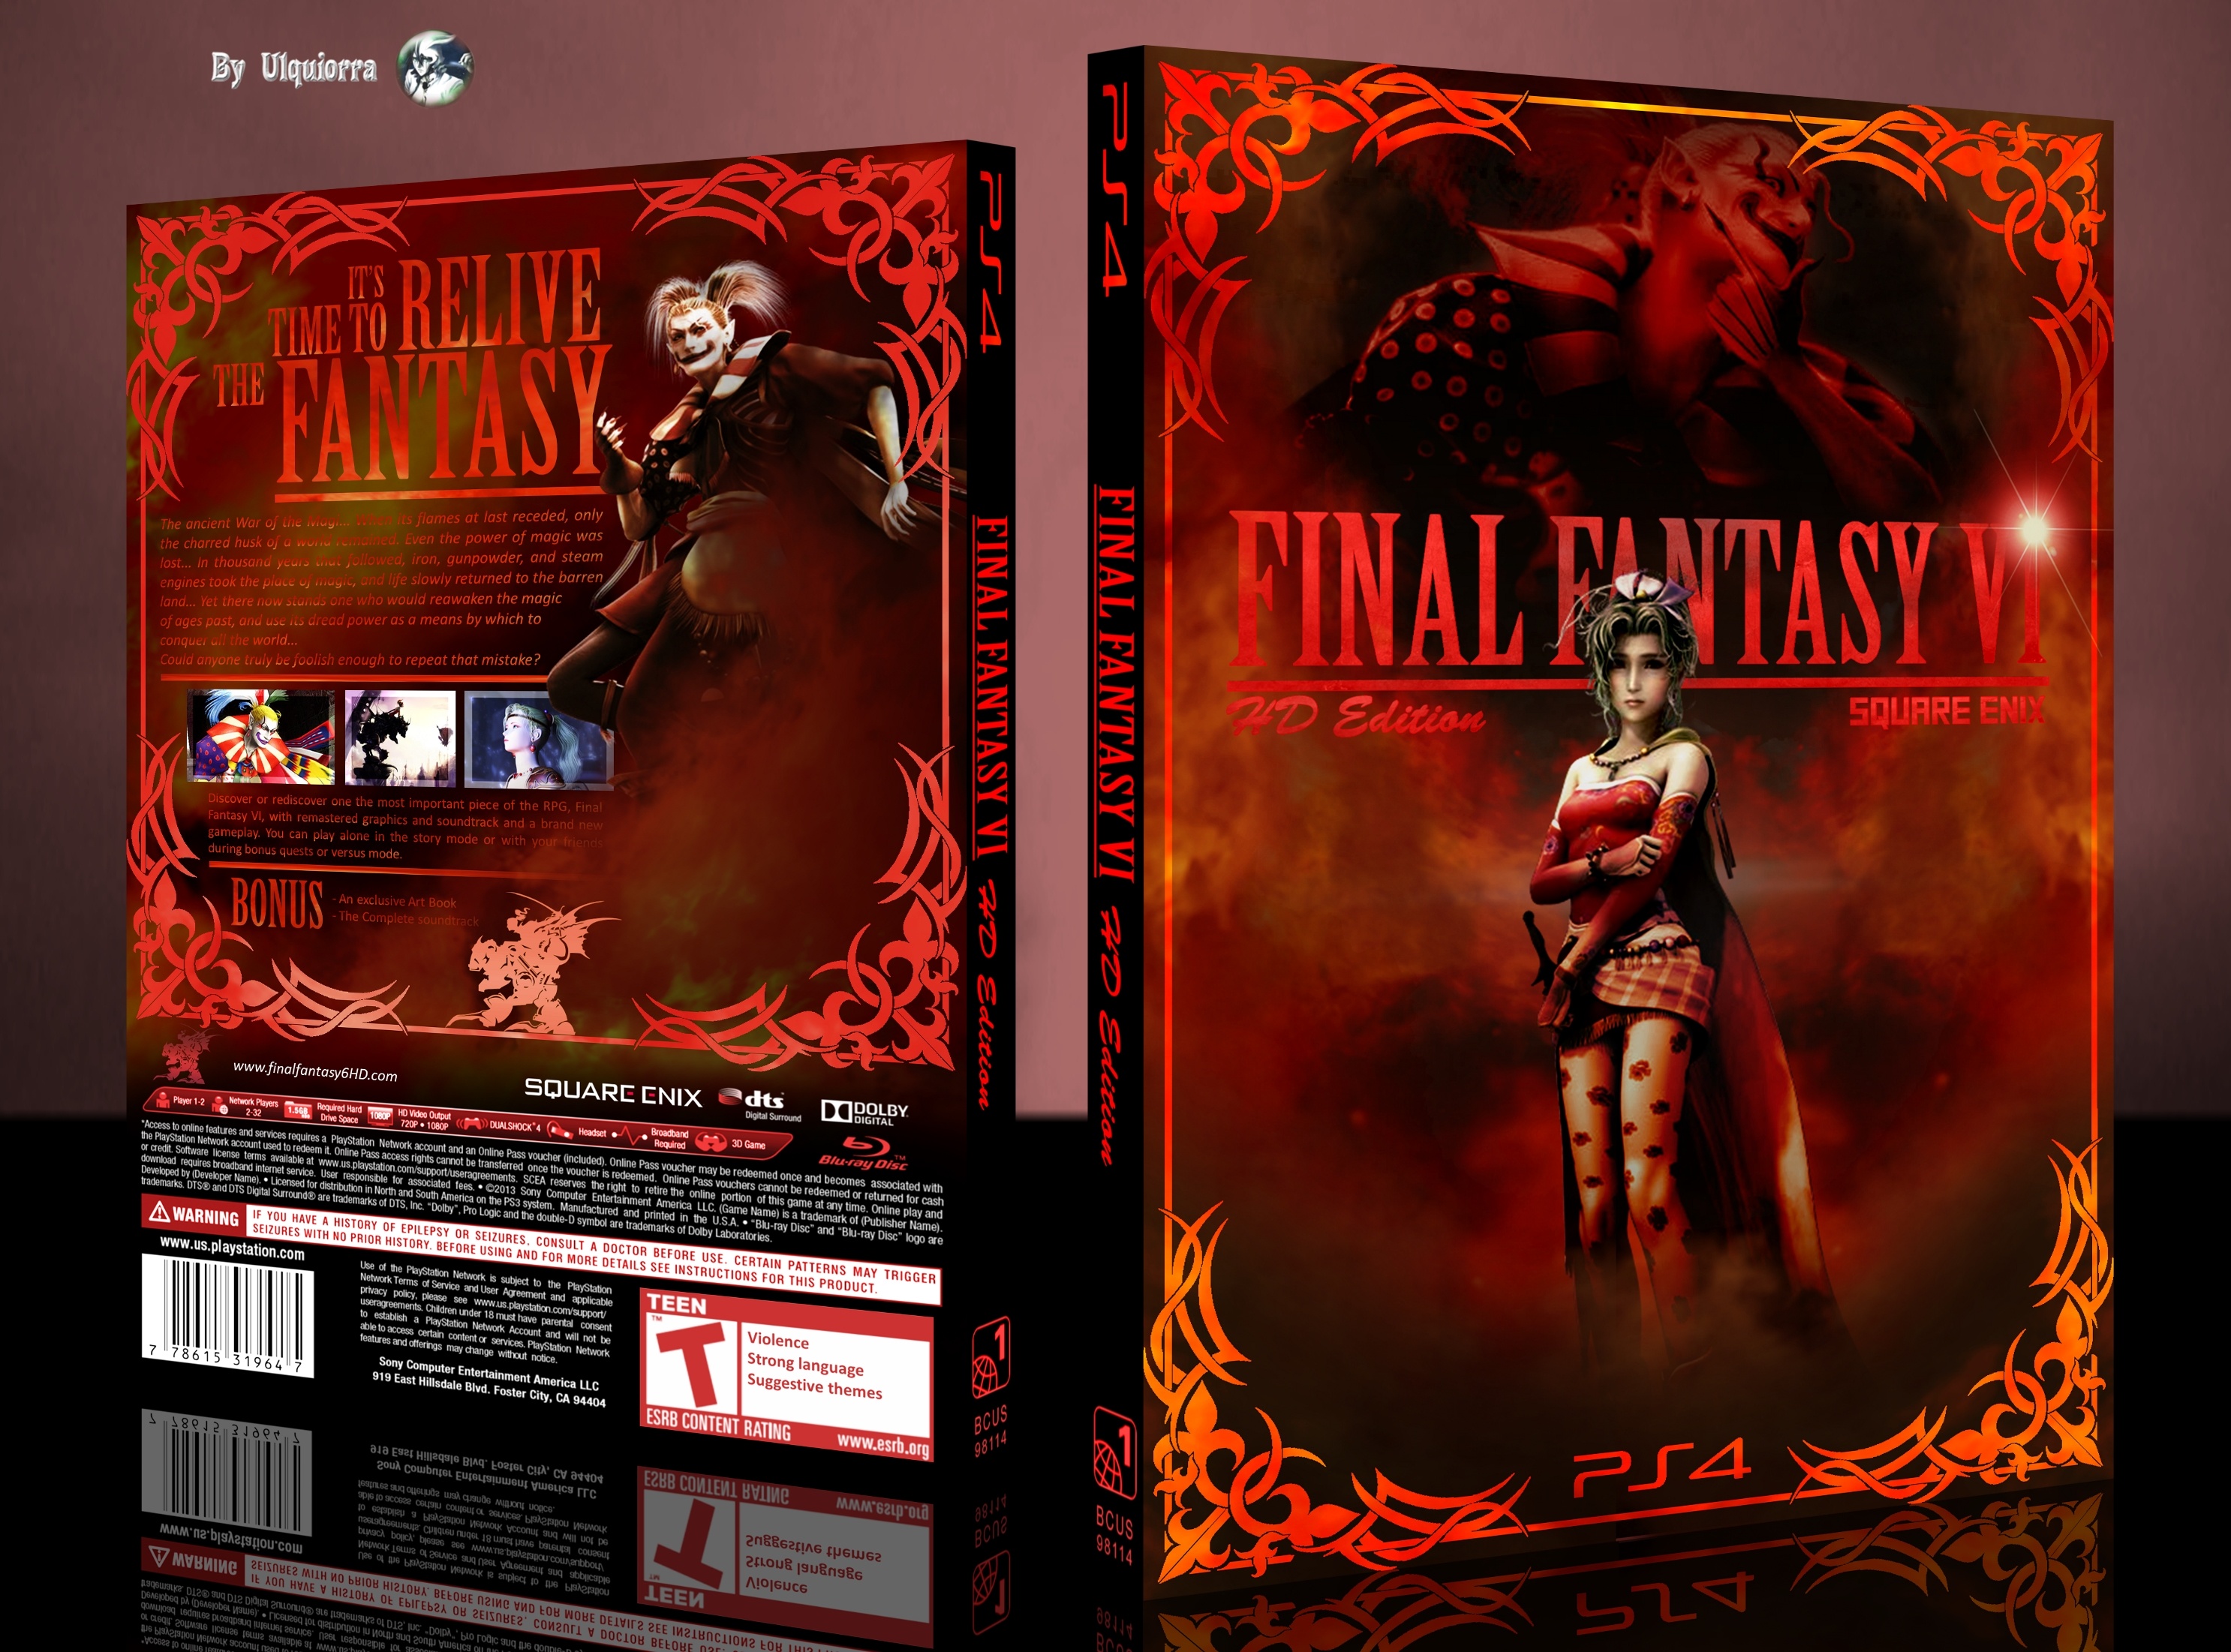 Final Fantasy VI HD edition box cover